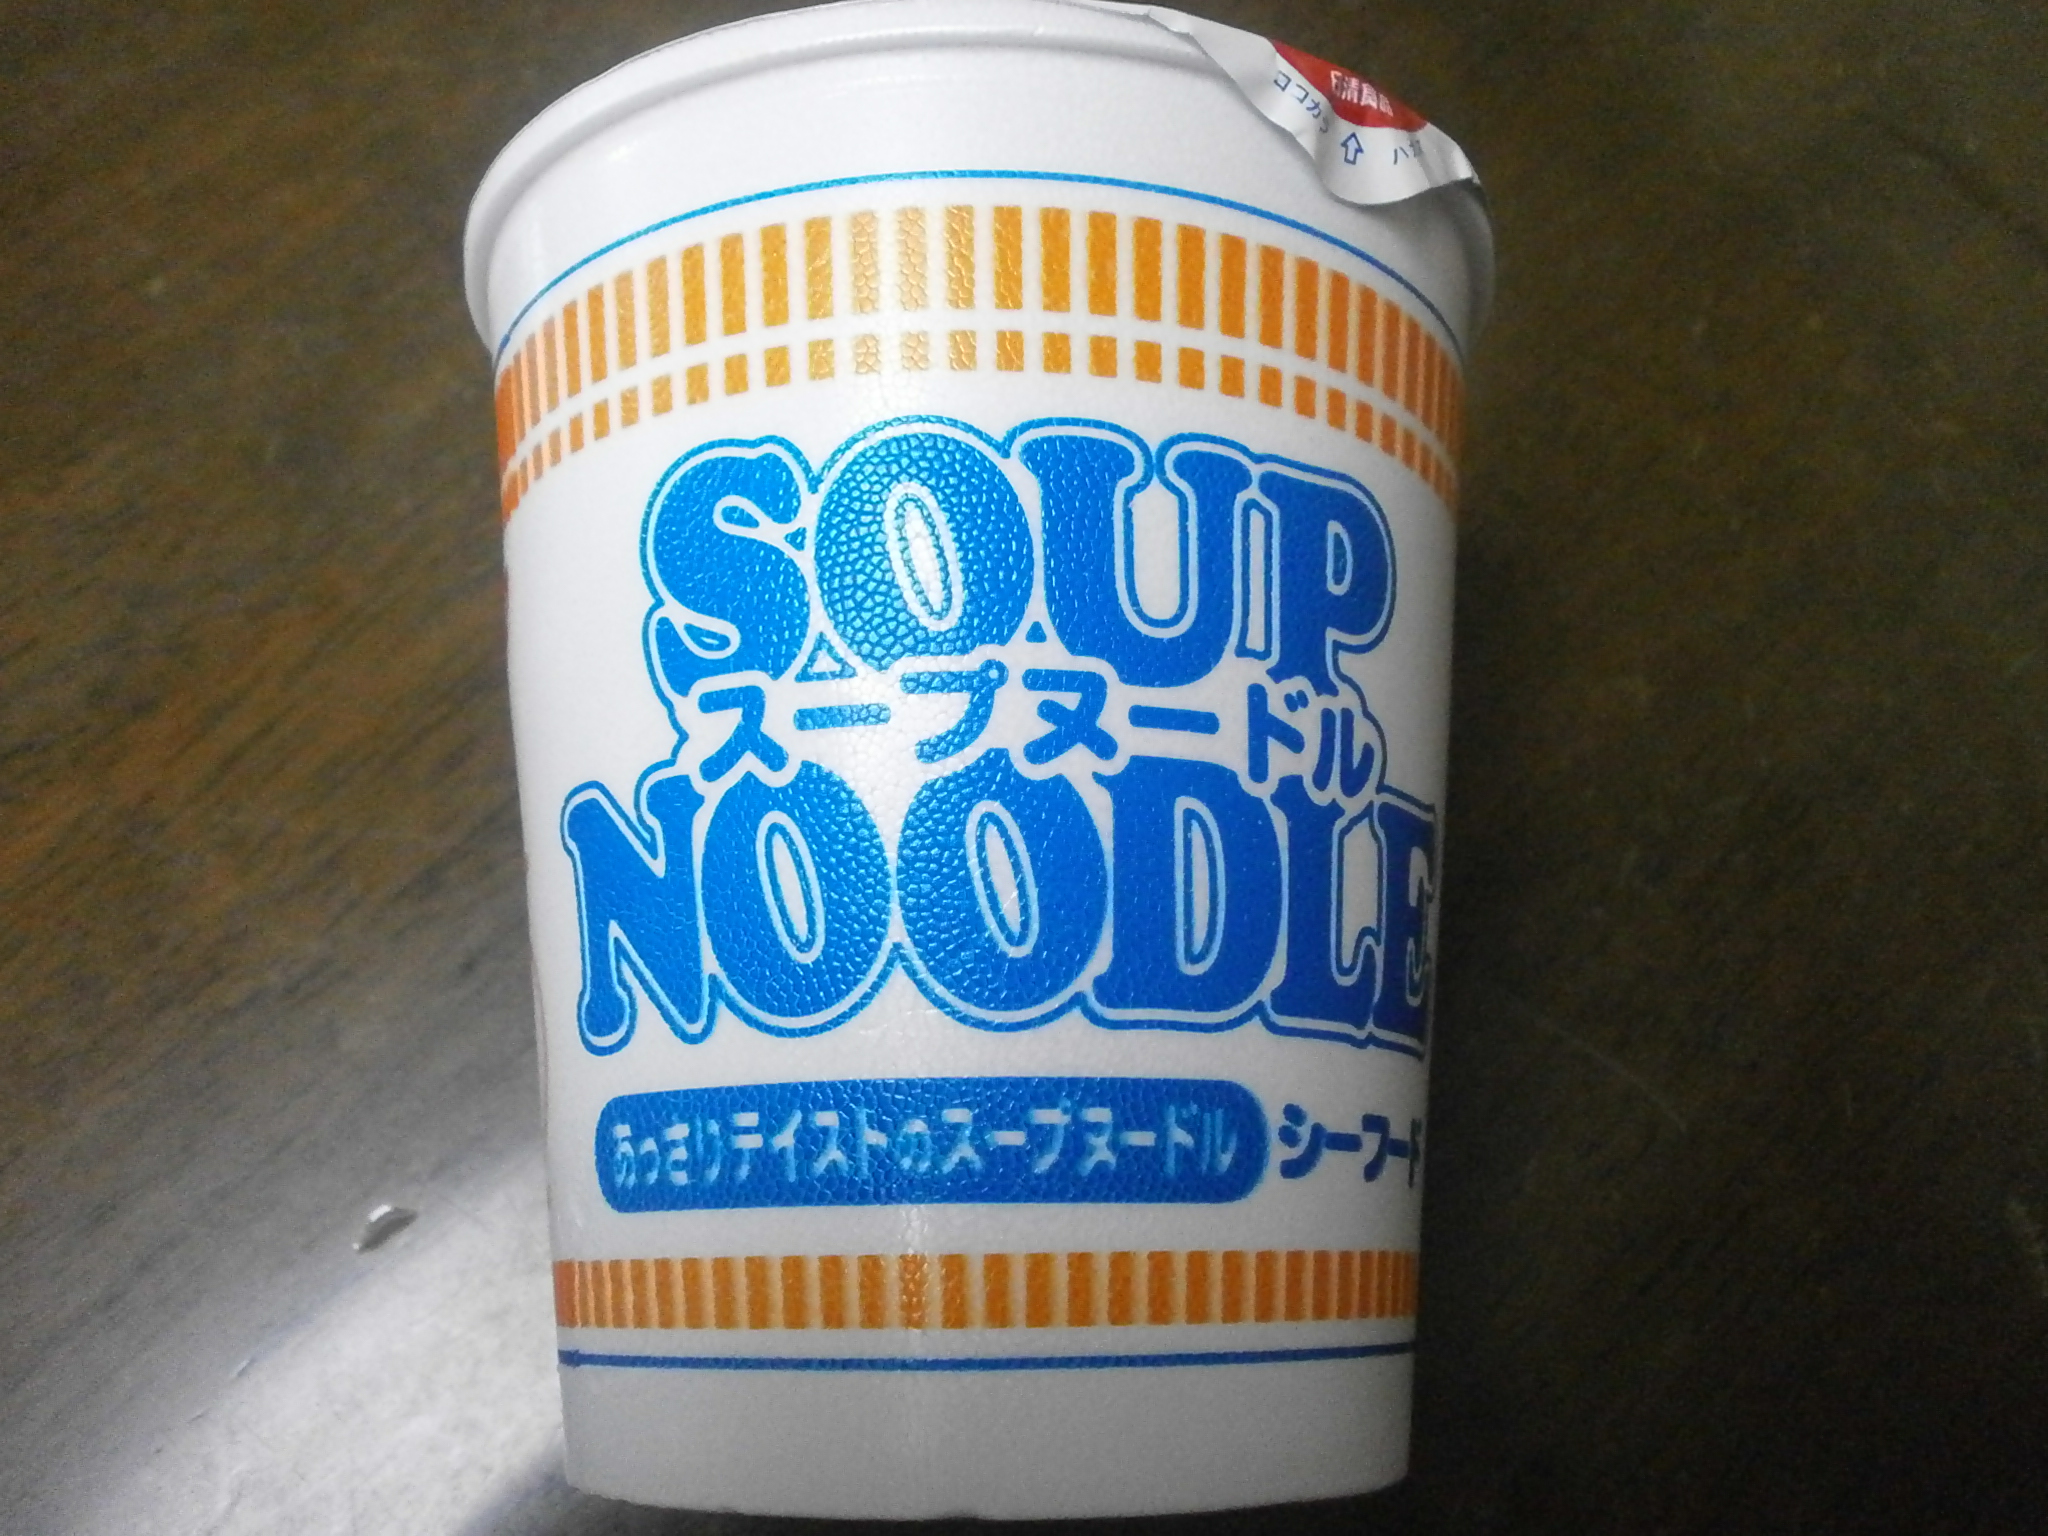 Noodle Soup (Seafood)